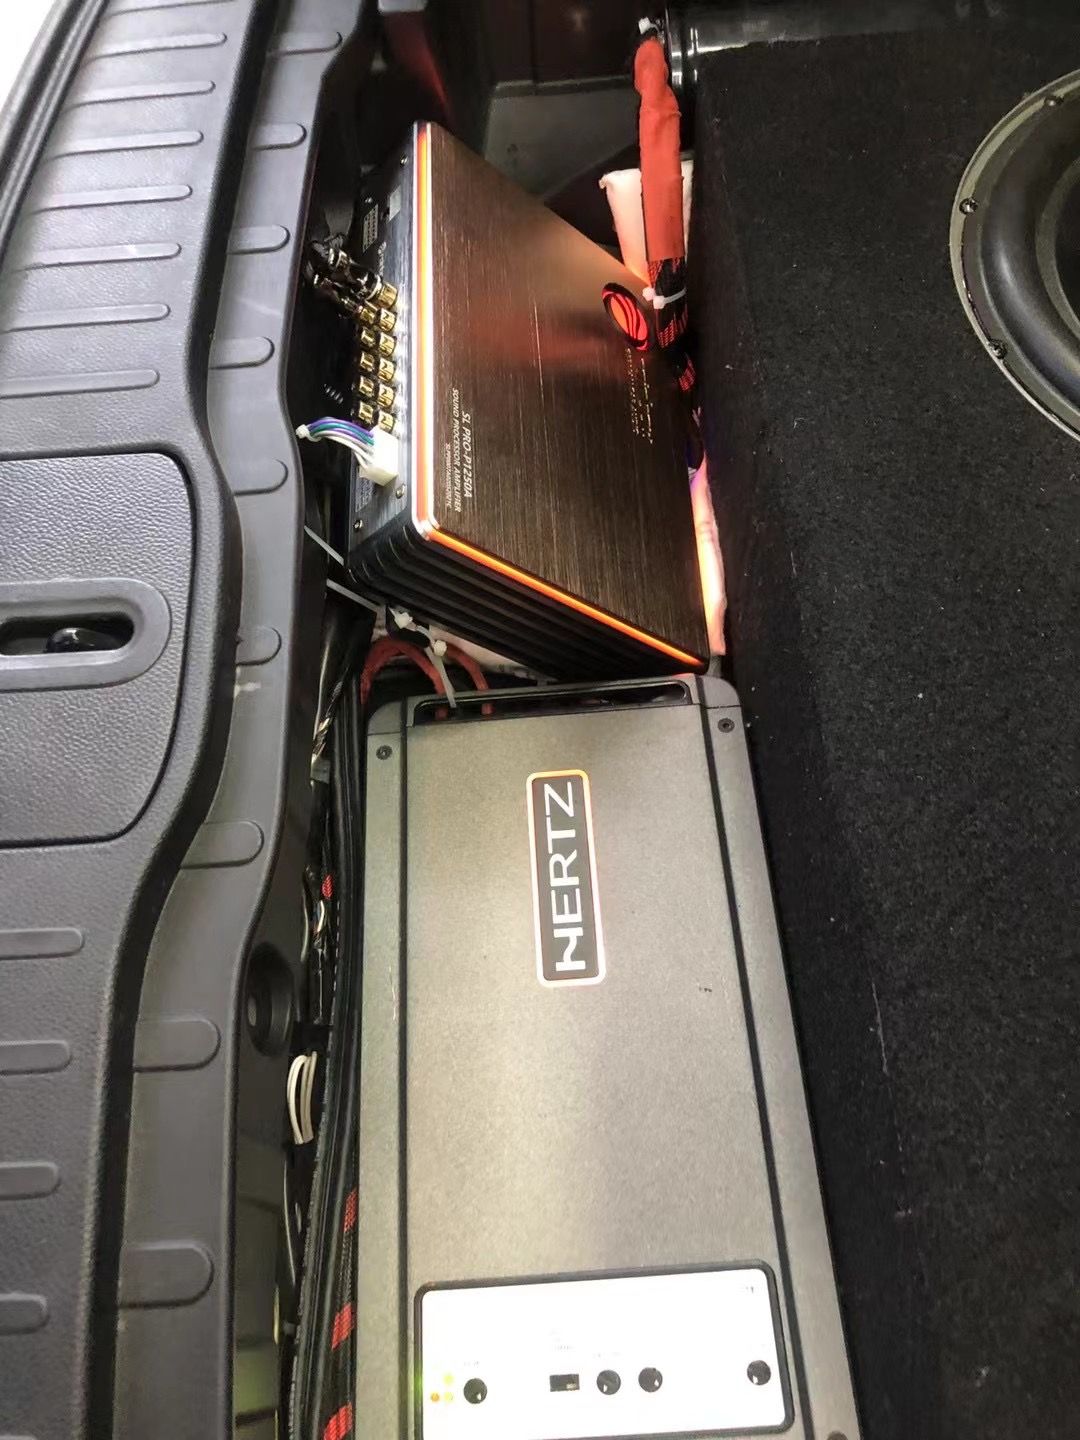 汕头星悦汽车音响英菲尼迪QX50升级德国彩虹SL PRO-P1250A十二路功放带DSP音频处理器为您带来不一样的汽车音响体验